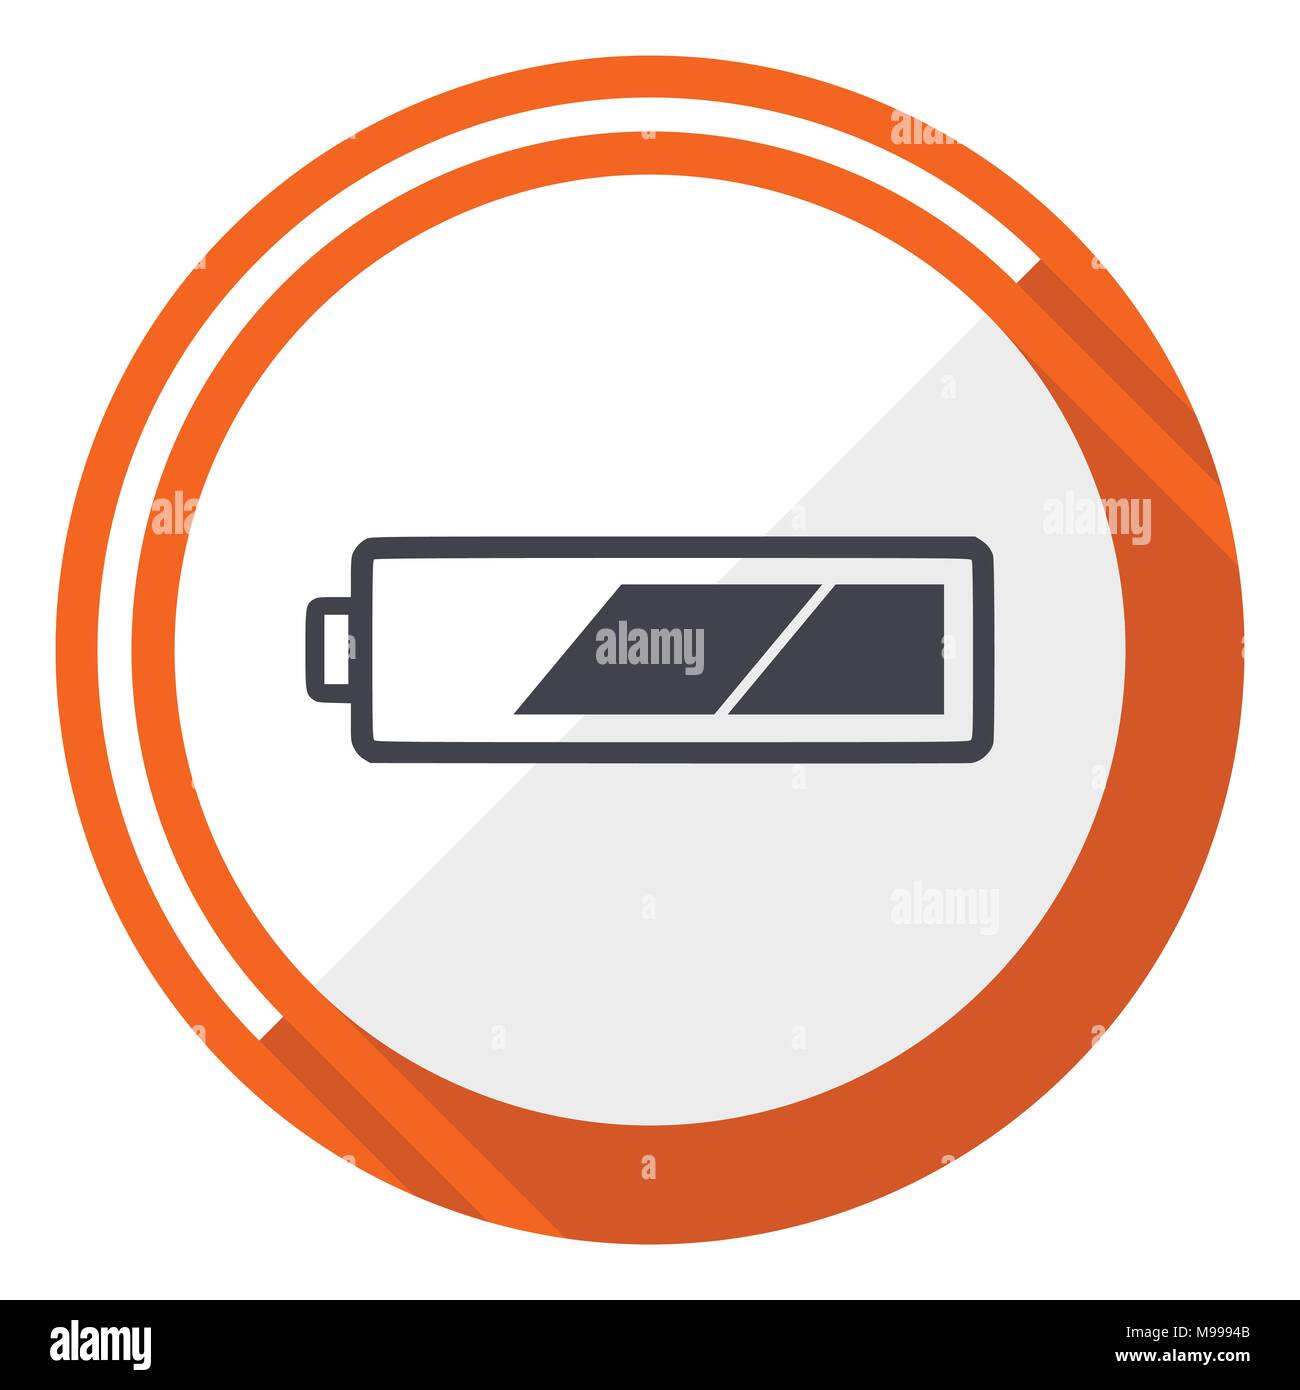 Batterie Leer Design Vector Web Icon Runde Orange Internet Taste Auf Weissem Hintergrund Stock Vektorgrafik Alamy